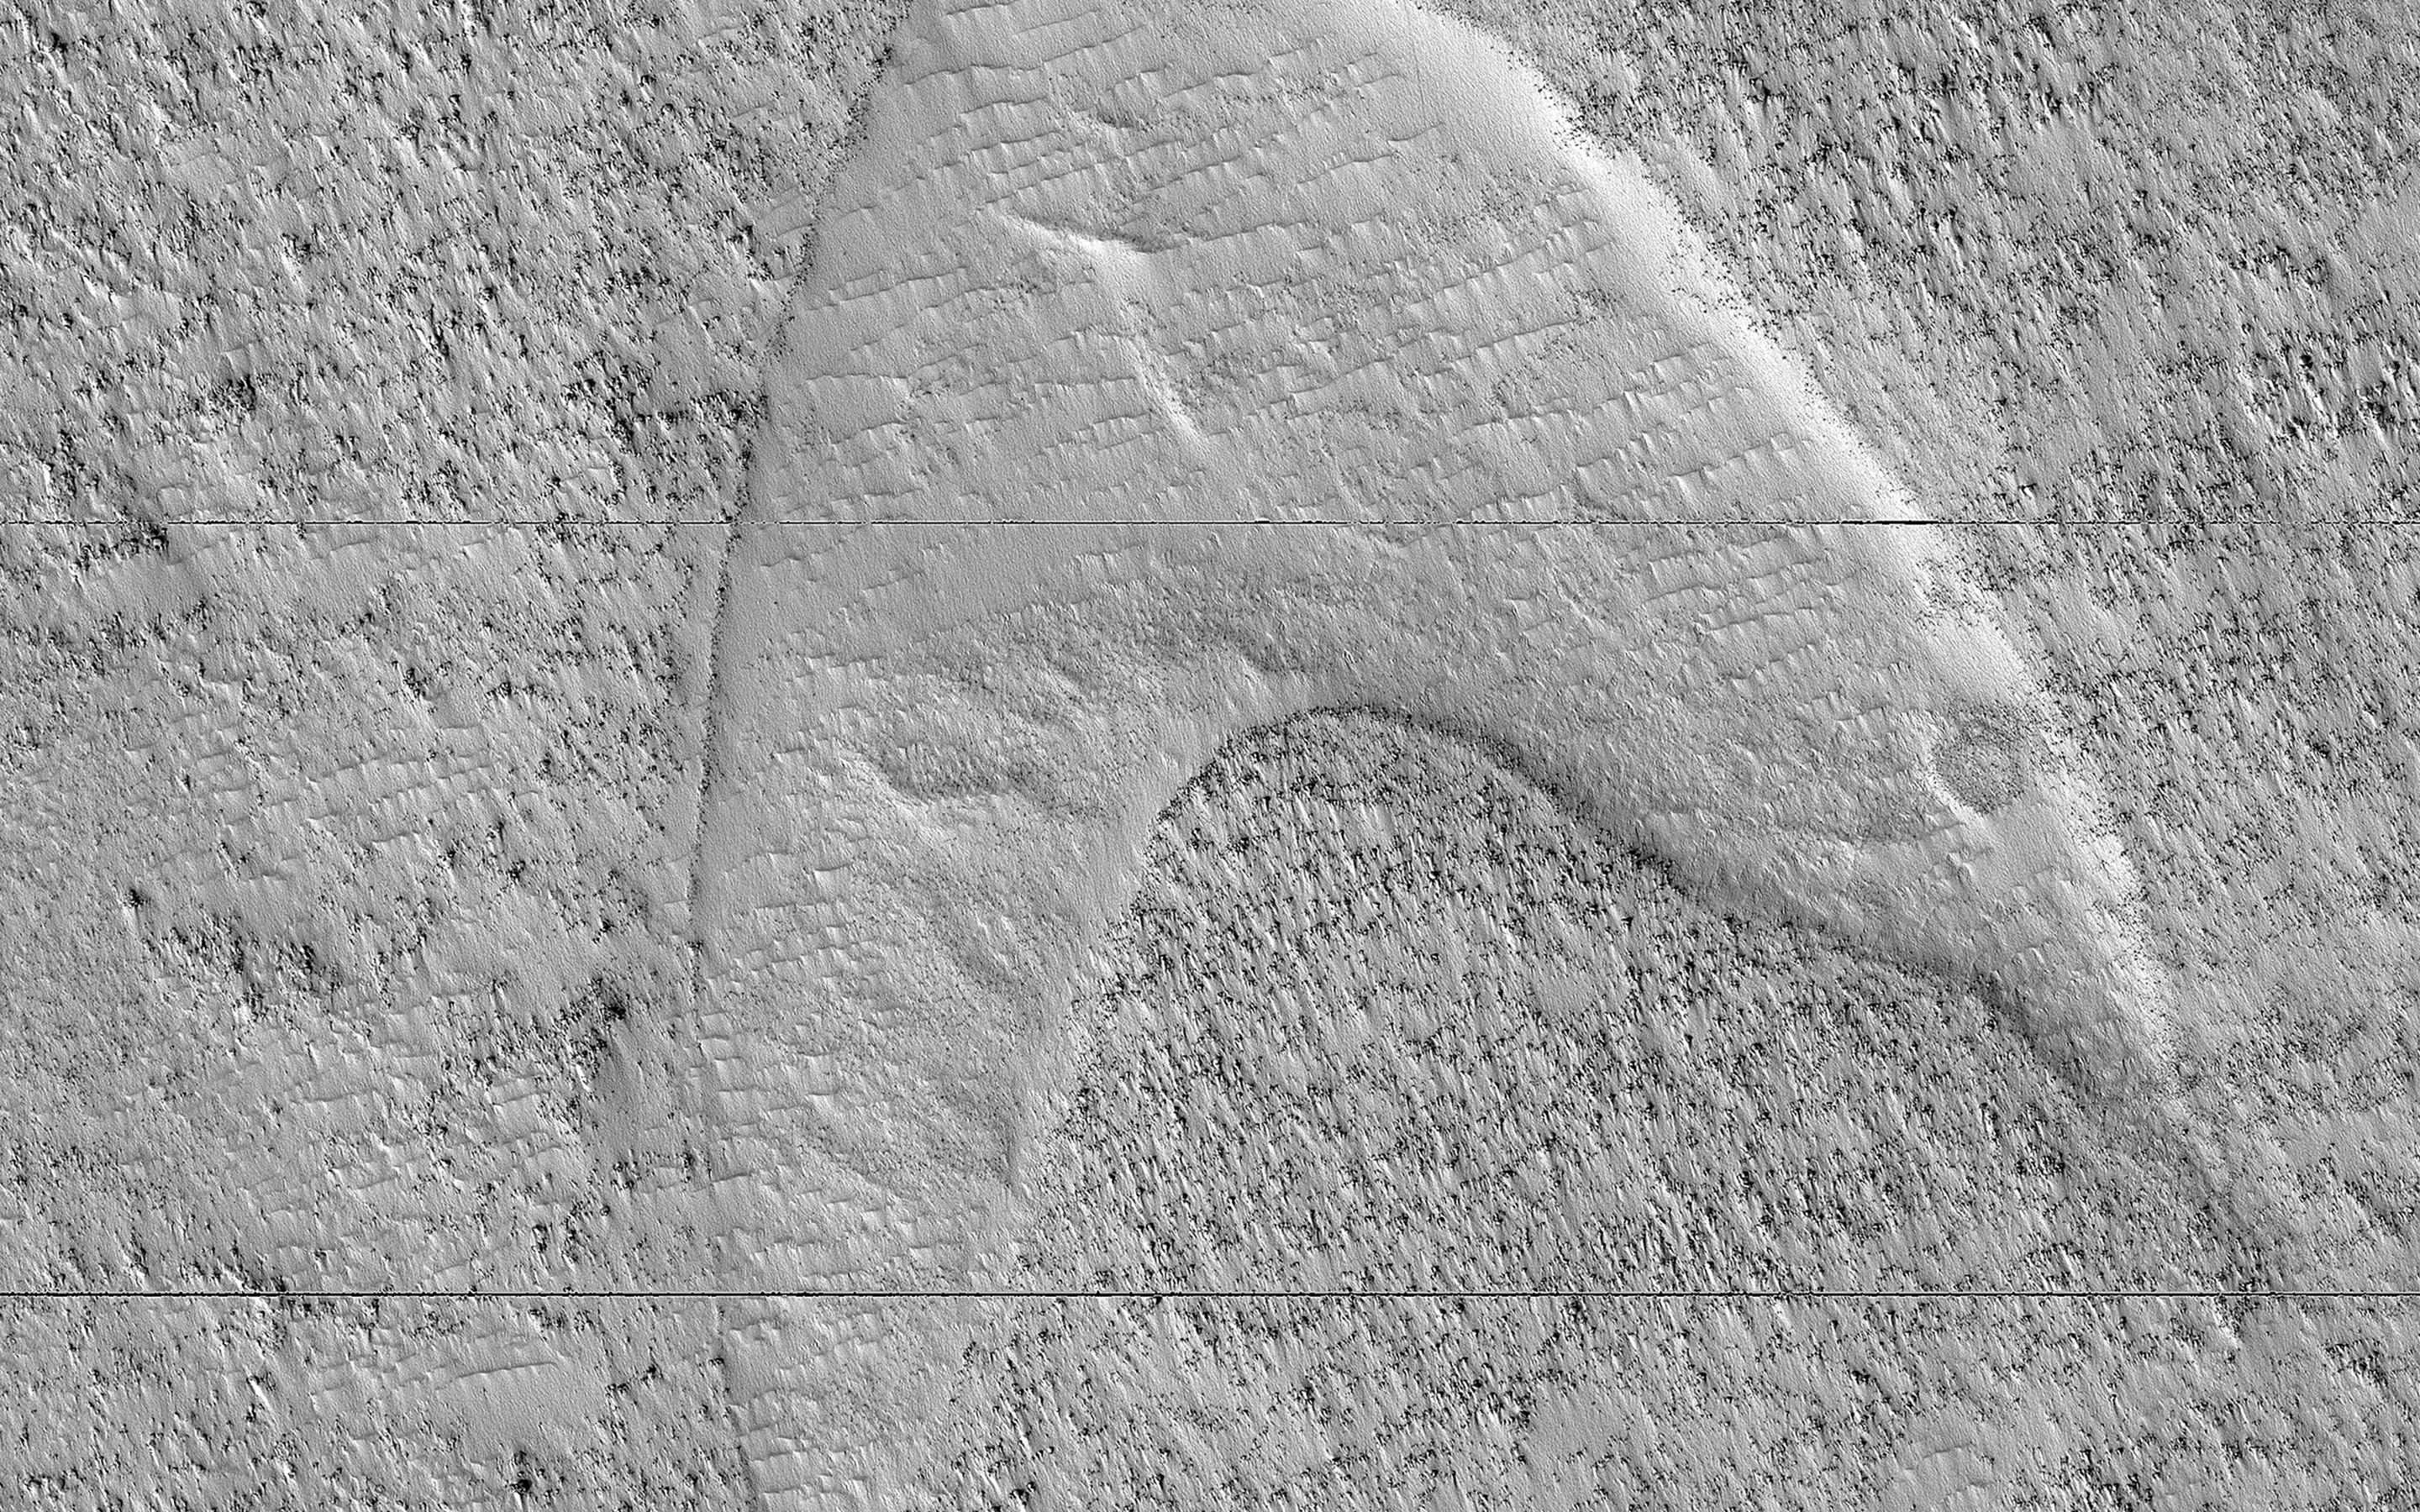 PIA23288: Dune Footprints in Hellas